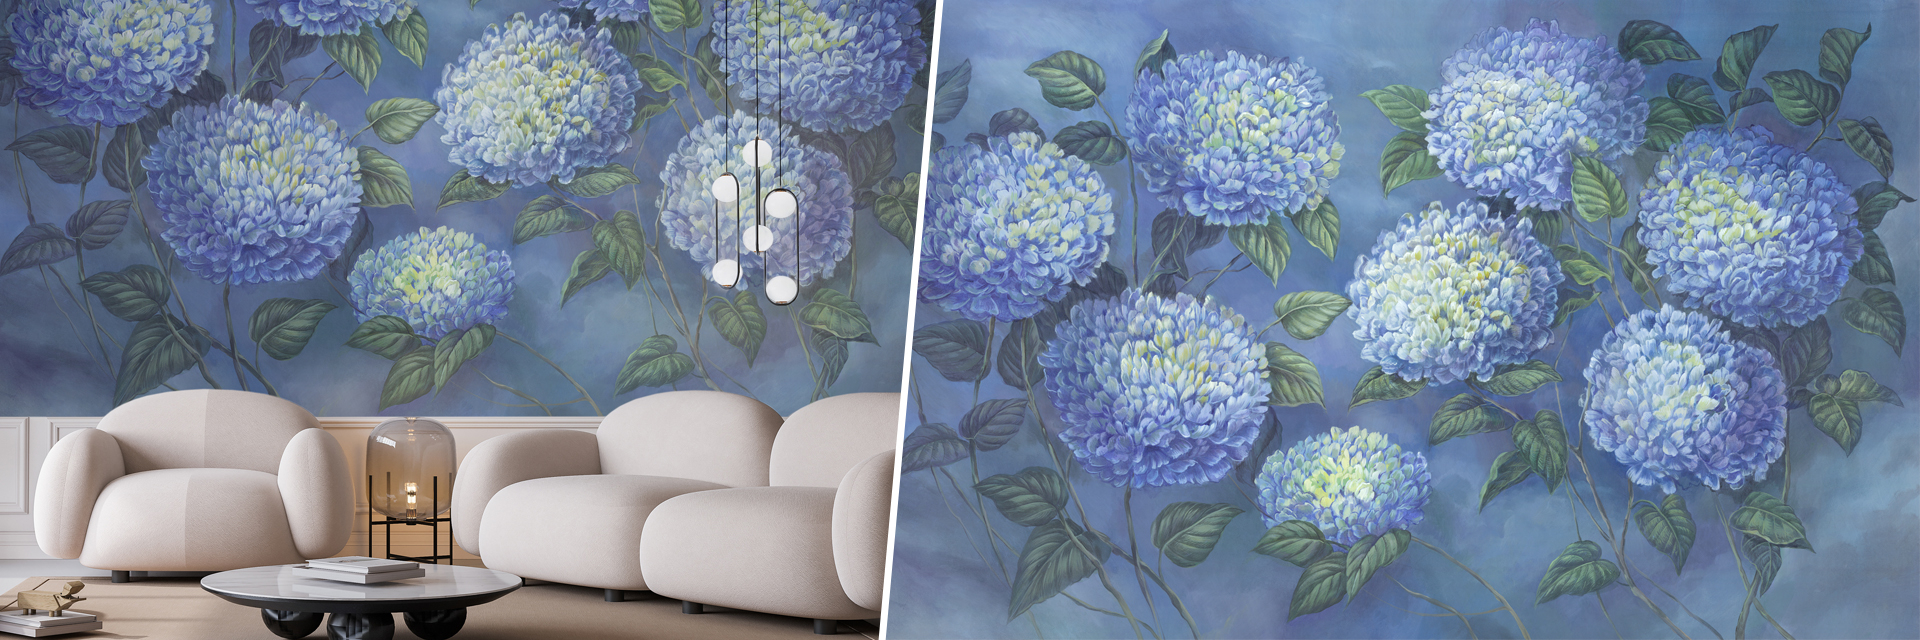 tapeta do salonu, tapeta artystyczna, duże kwiaty, hortensje, niebieskie, elegancka tapeta